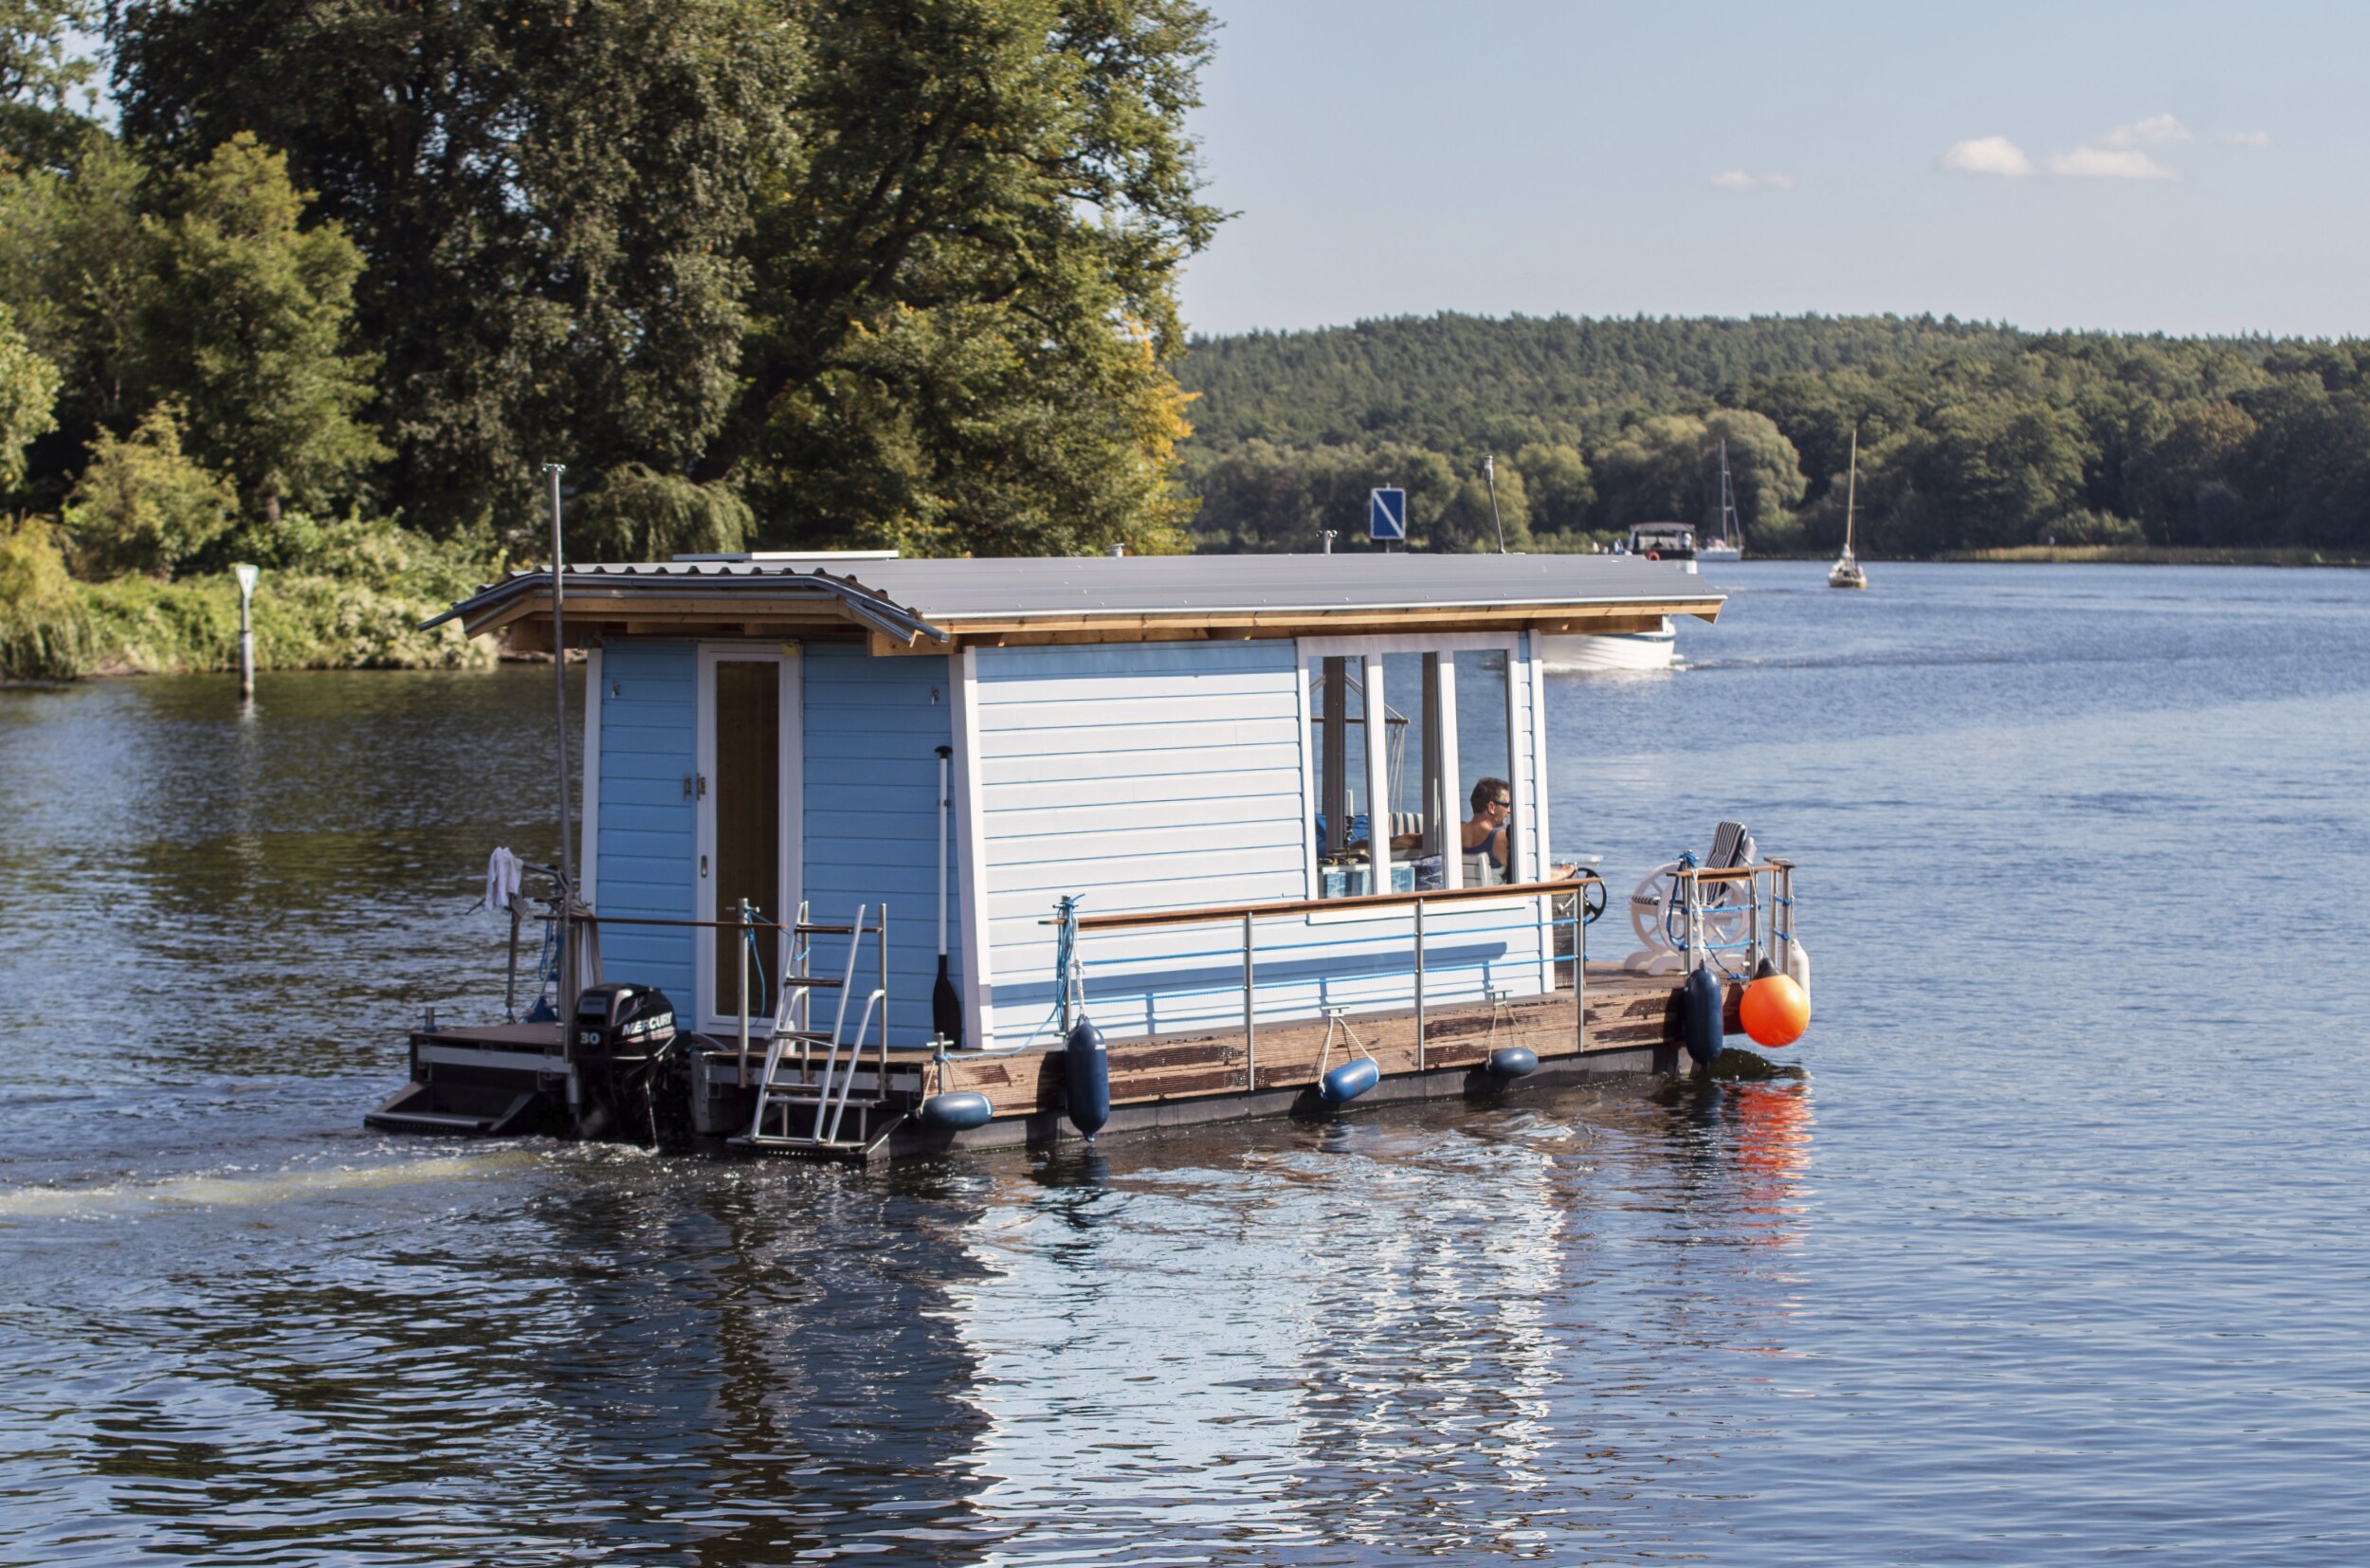 Vaartuig huren | Meer informatie over een houseboat